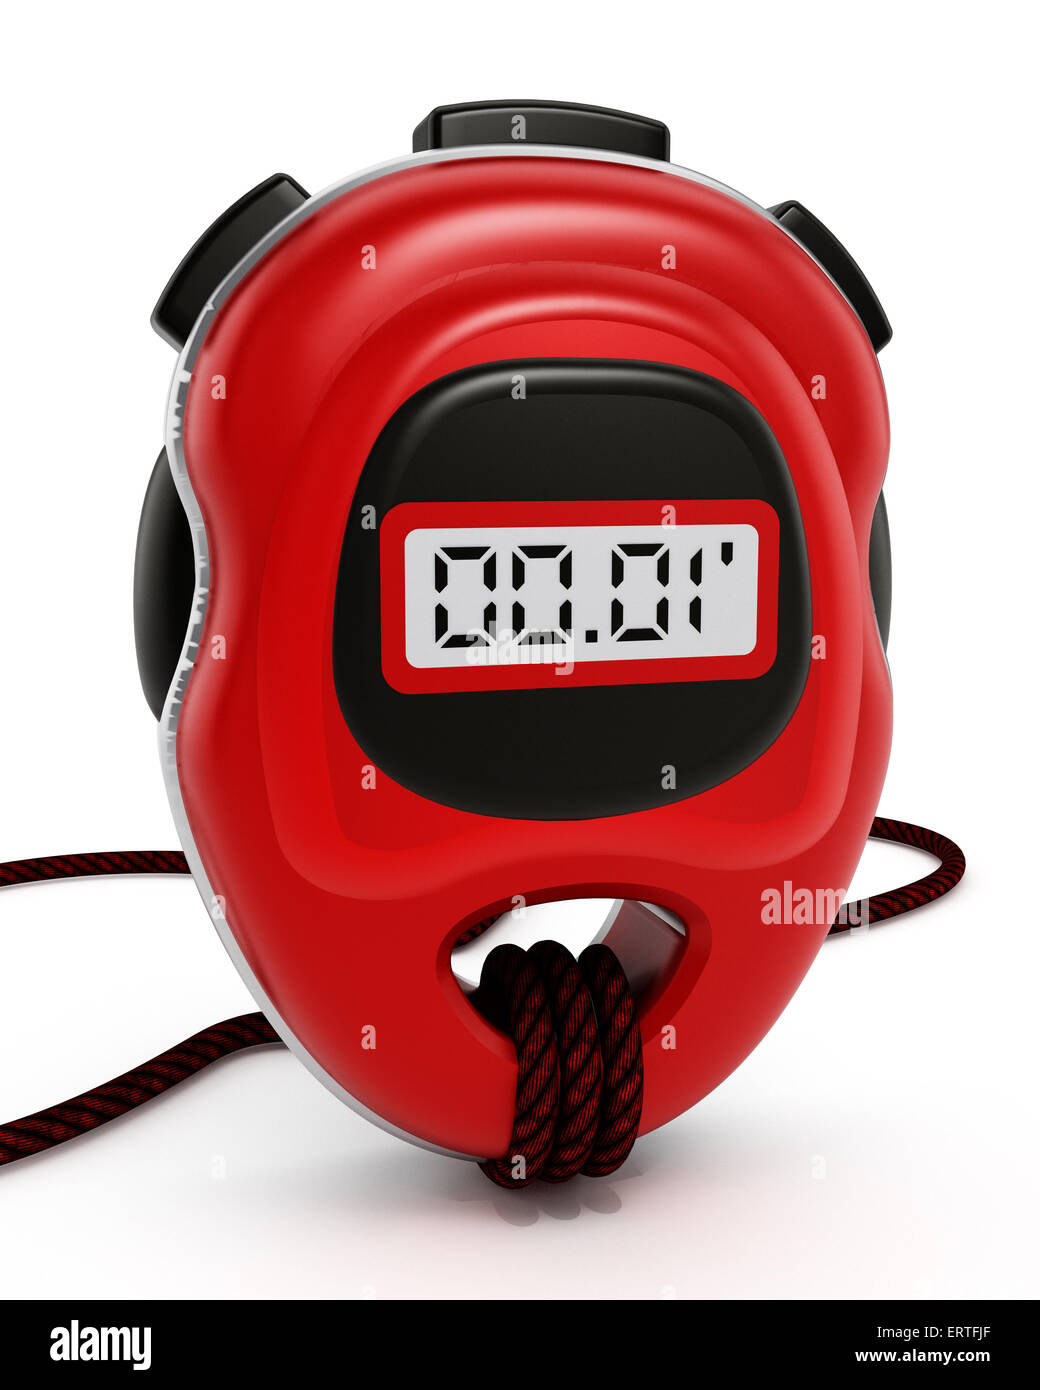 Digital chronometer isolated on white background Stock Photo